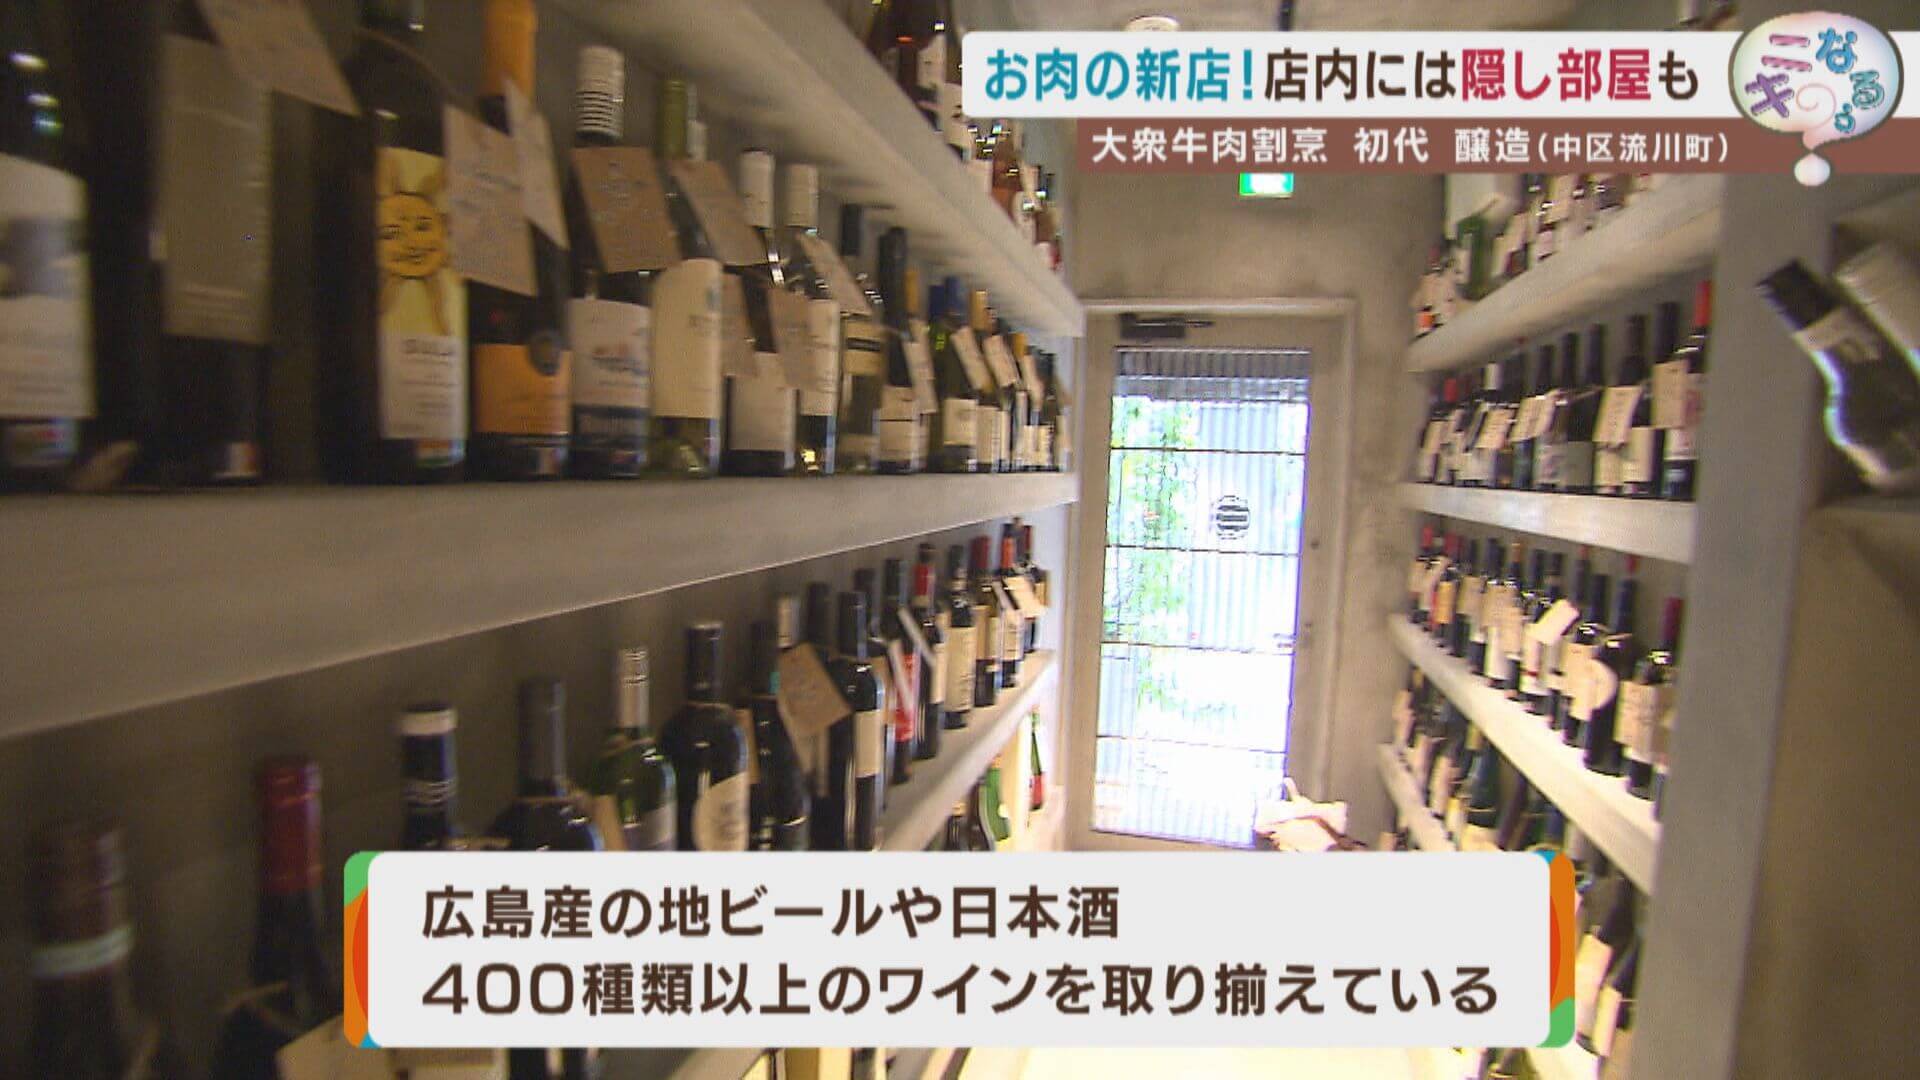 広島産の地ビールや日本酒、400種類以上のワインなど